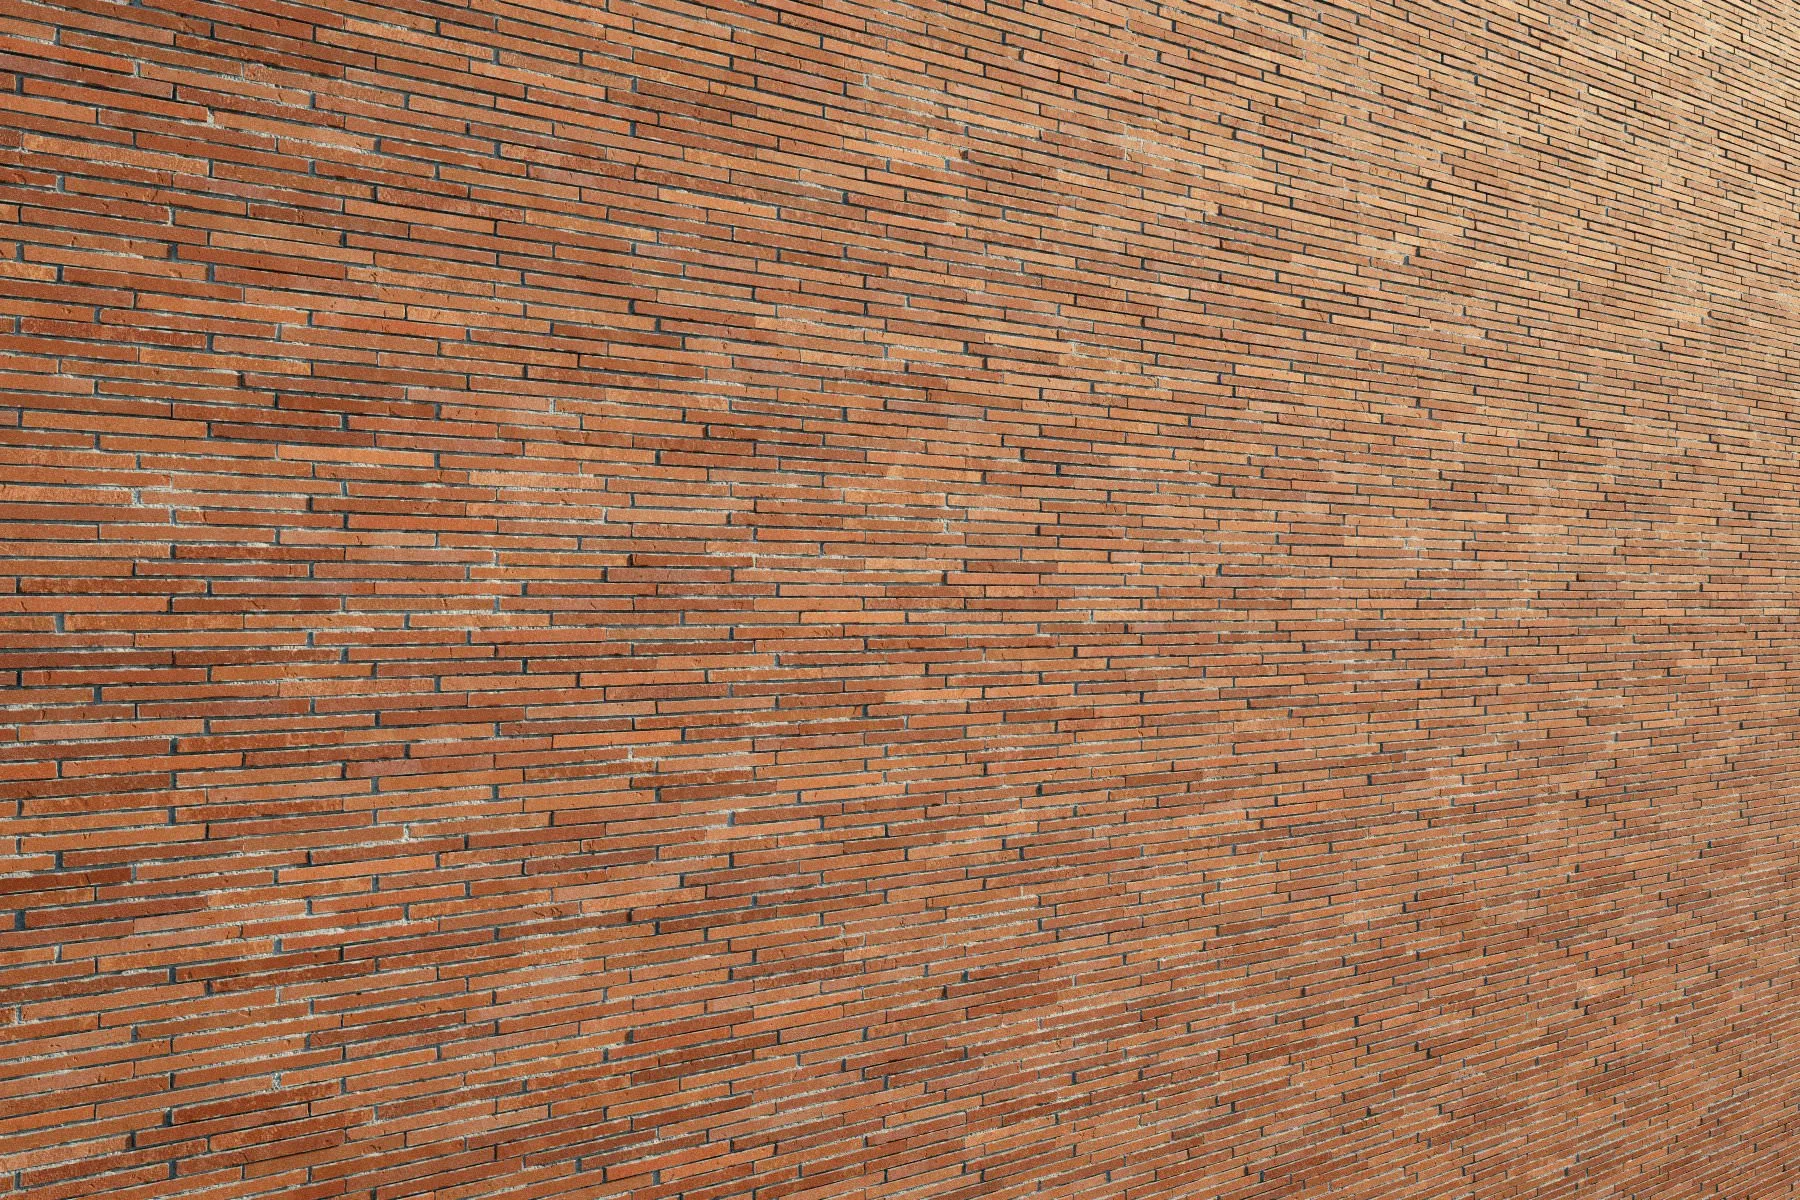 Bricks vol05 Mortar 8K Seamless PBR Materials